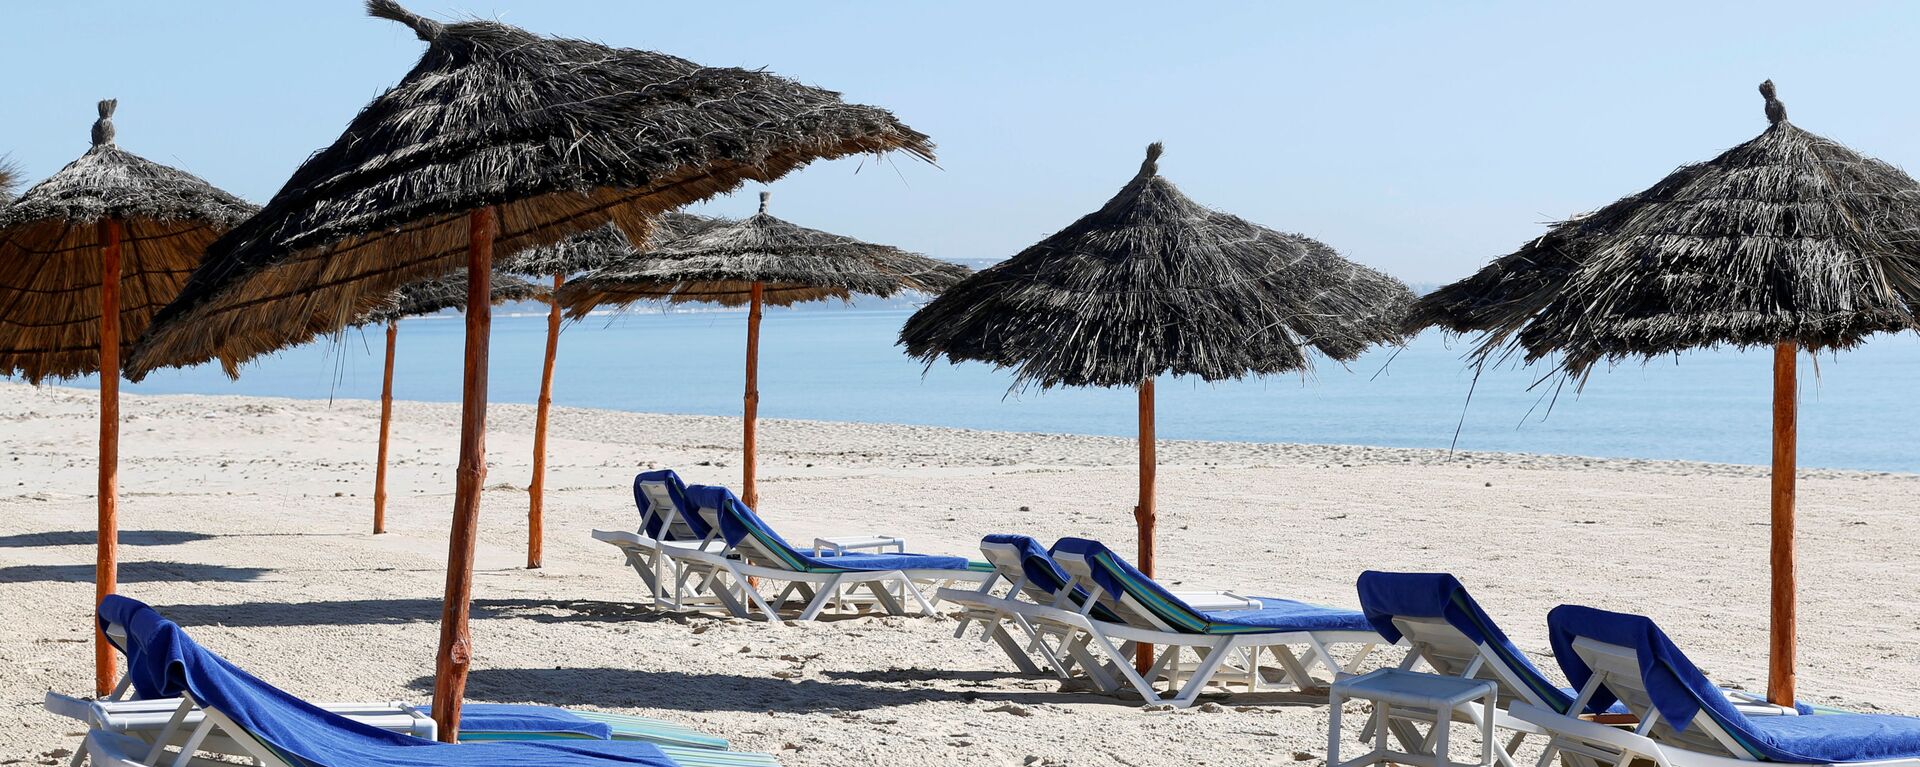 شاطئ خالي من السياح بالقرب من فندق هاسدرابل في مدينة الحمامات، تونس 12 مارس / آذار 2020 - سبوتنيك عربي, 1920, 06.07.2021